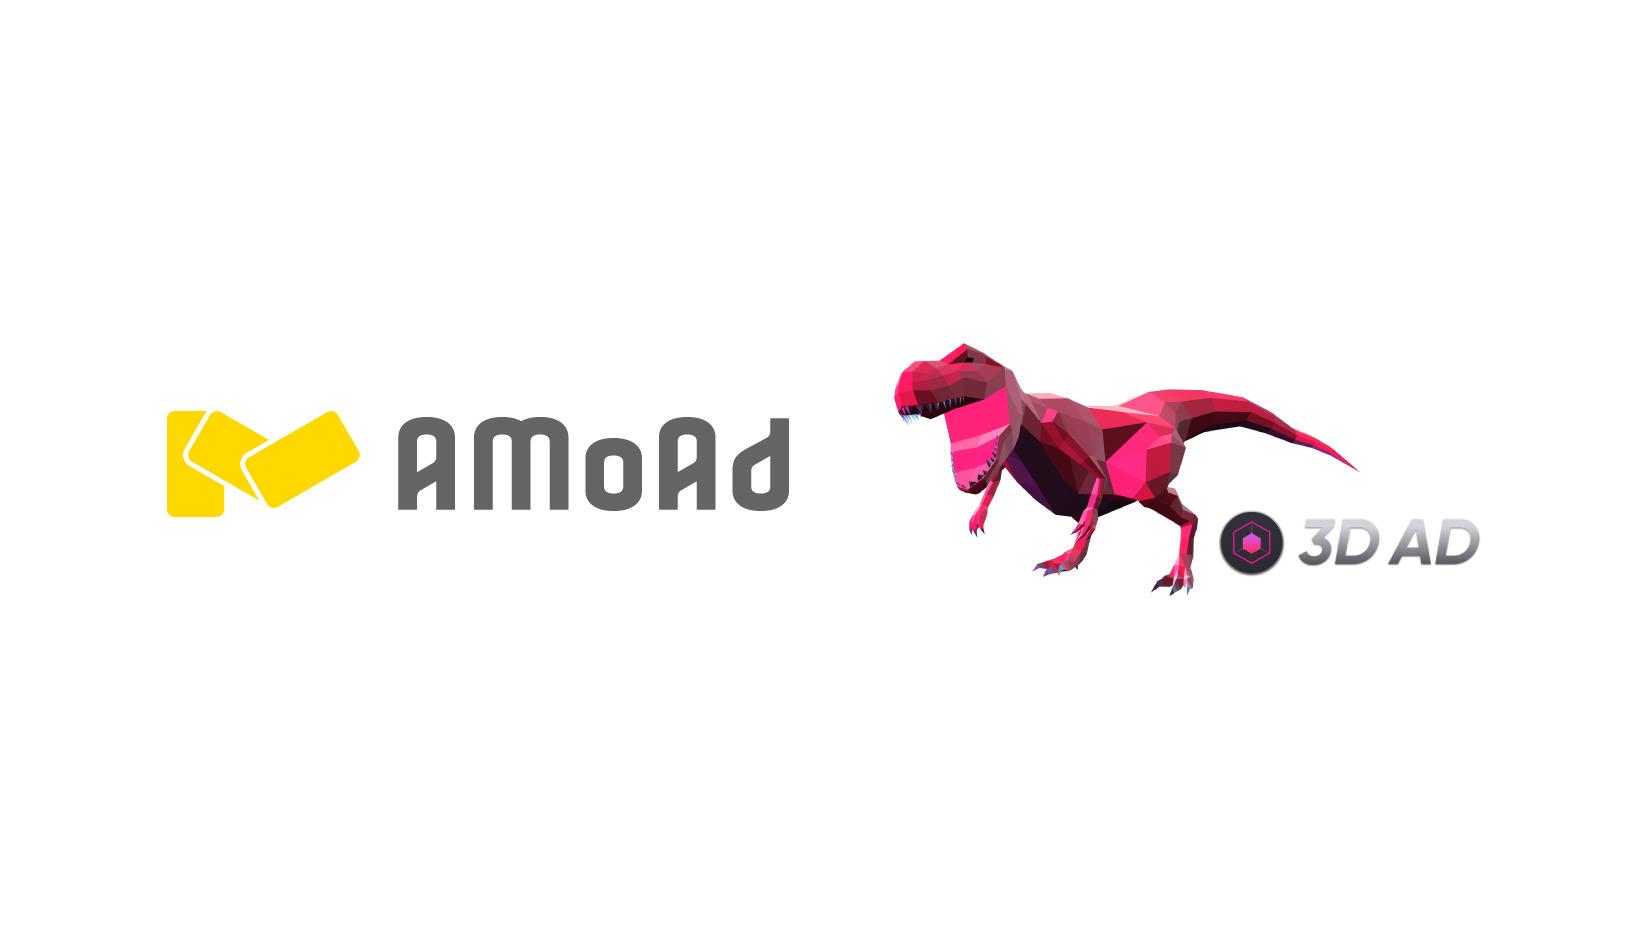 AMoAd、インタラクティブ広告「3D AD」を提供開始